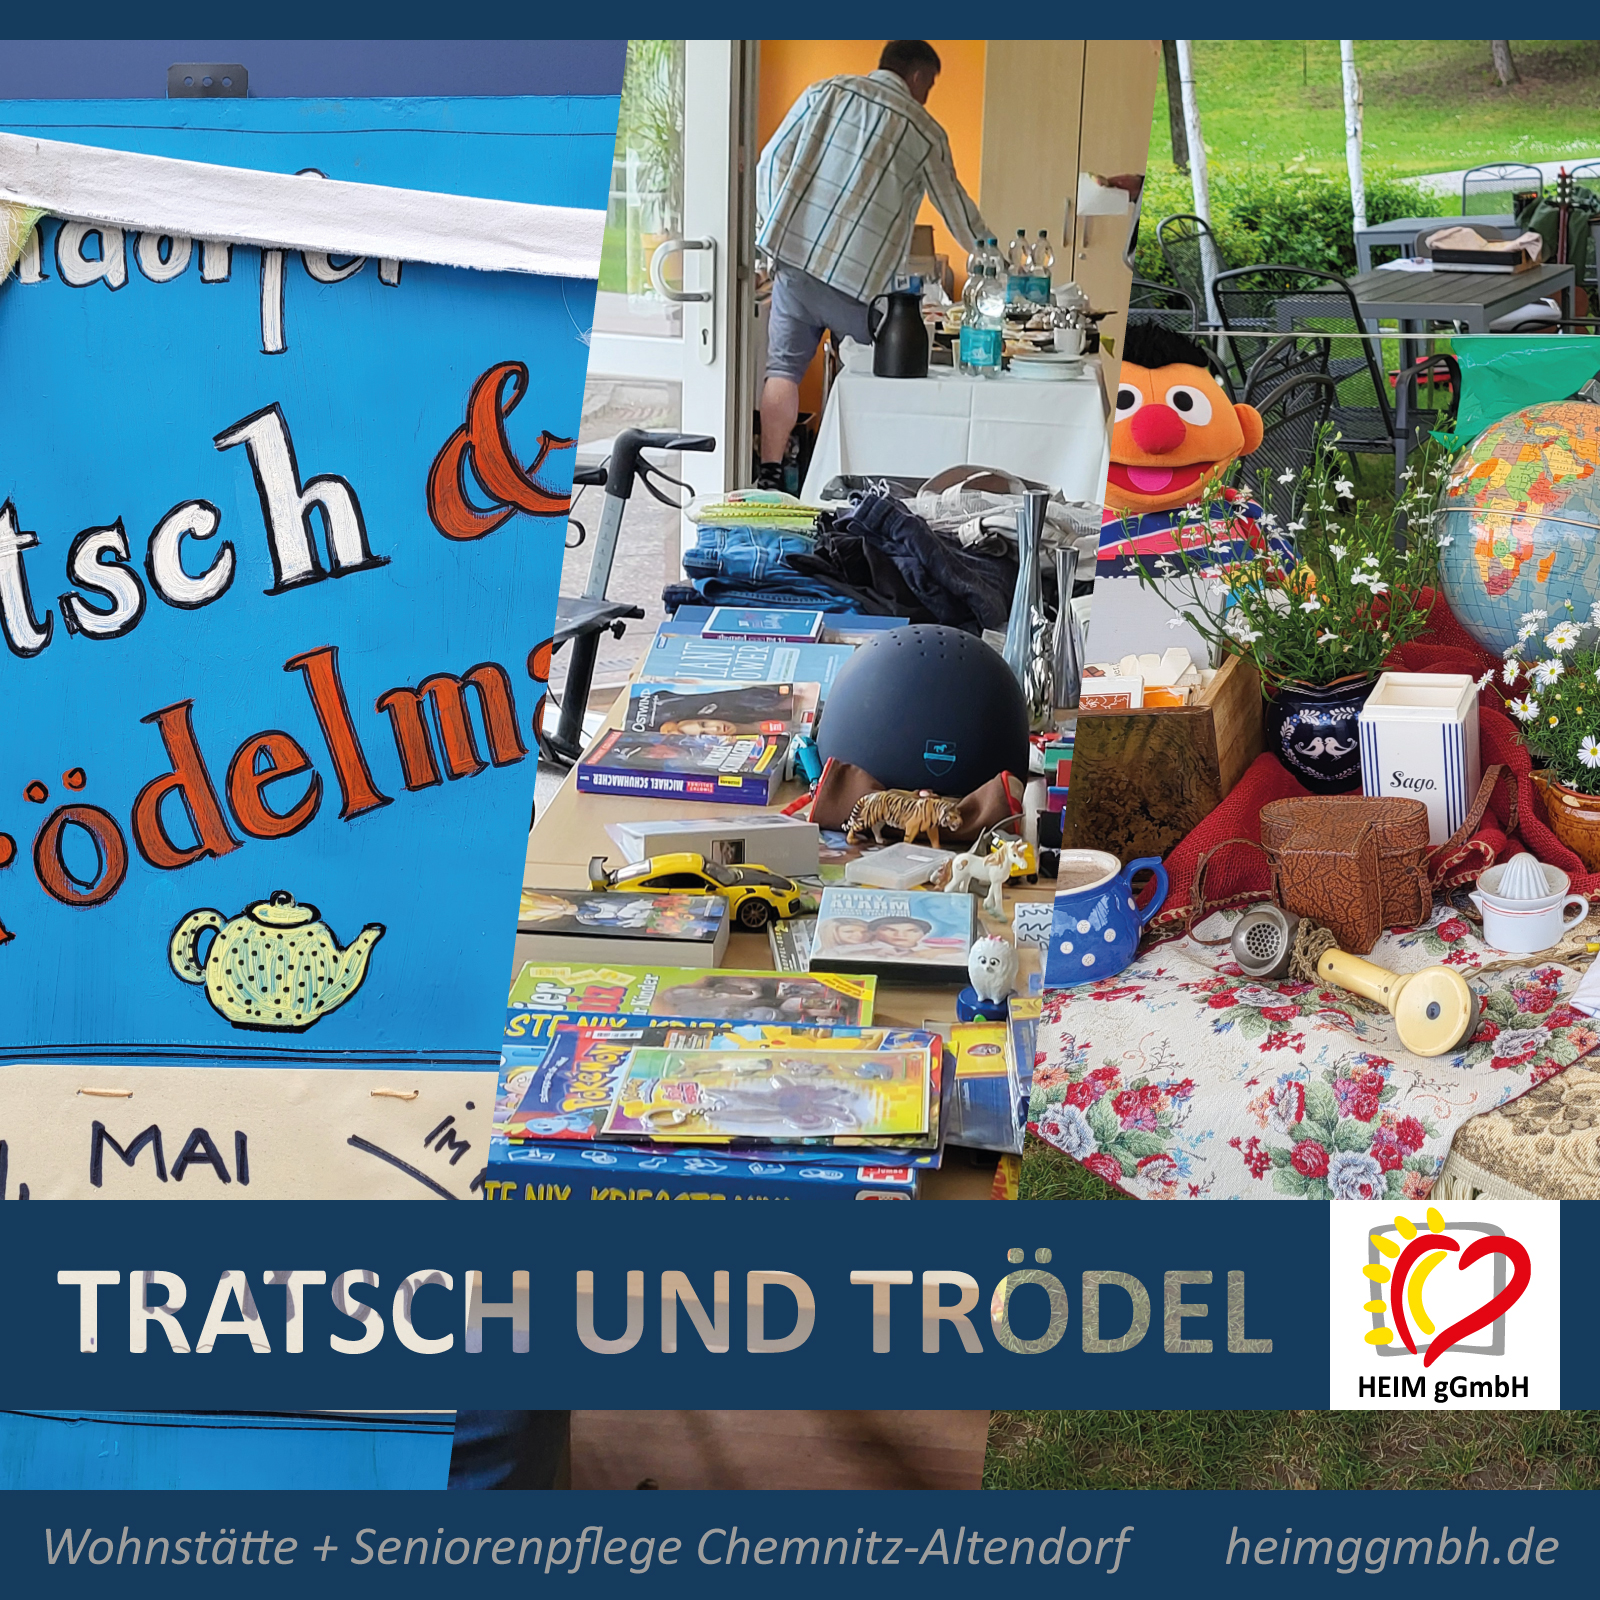 Tratsch und Trödel beim zweite Altendorfer Tratsch- und Trödelmarkt in der Wohnstätte der HEIM gGmbH in Chemnitz-Altendorf